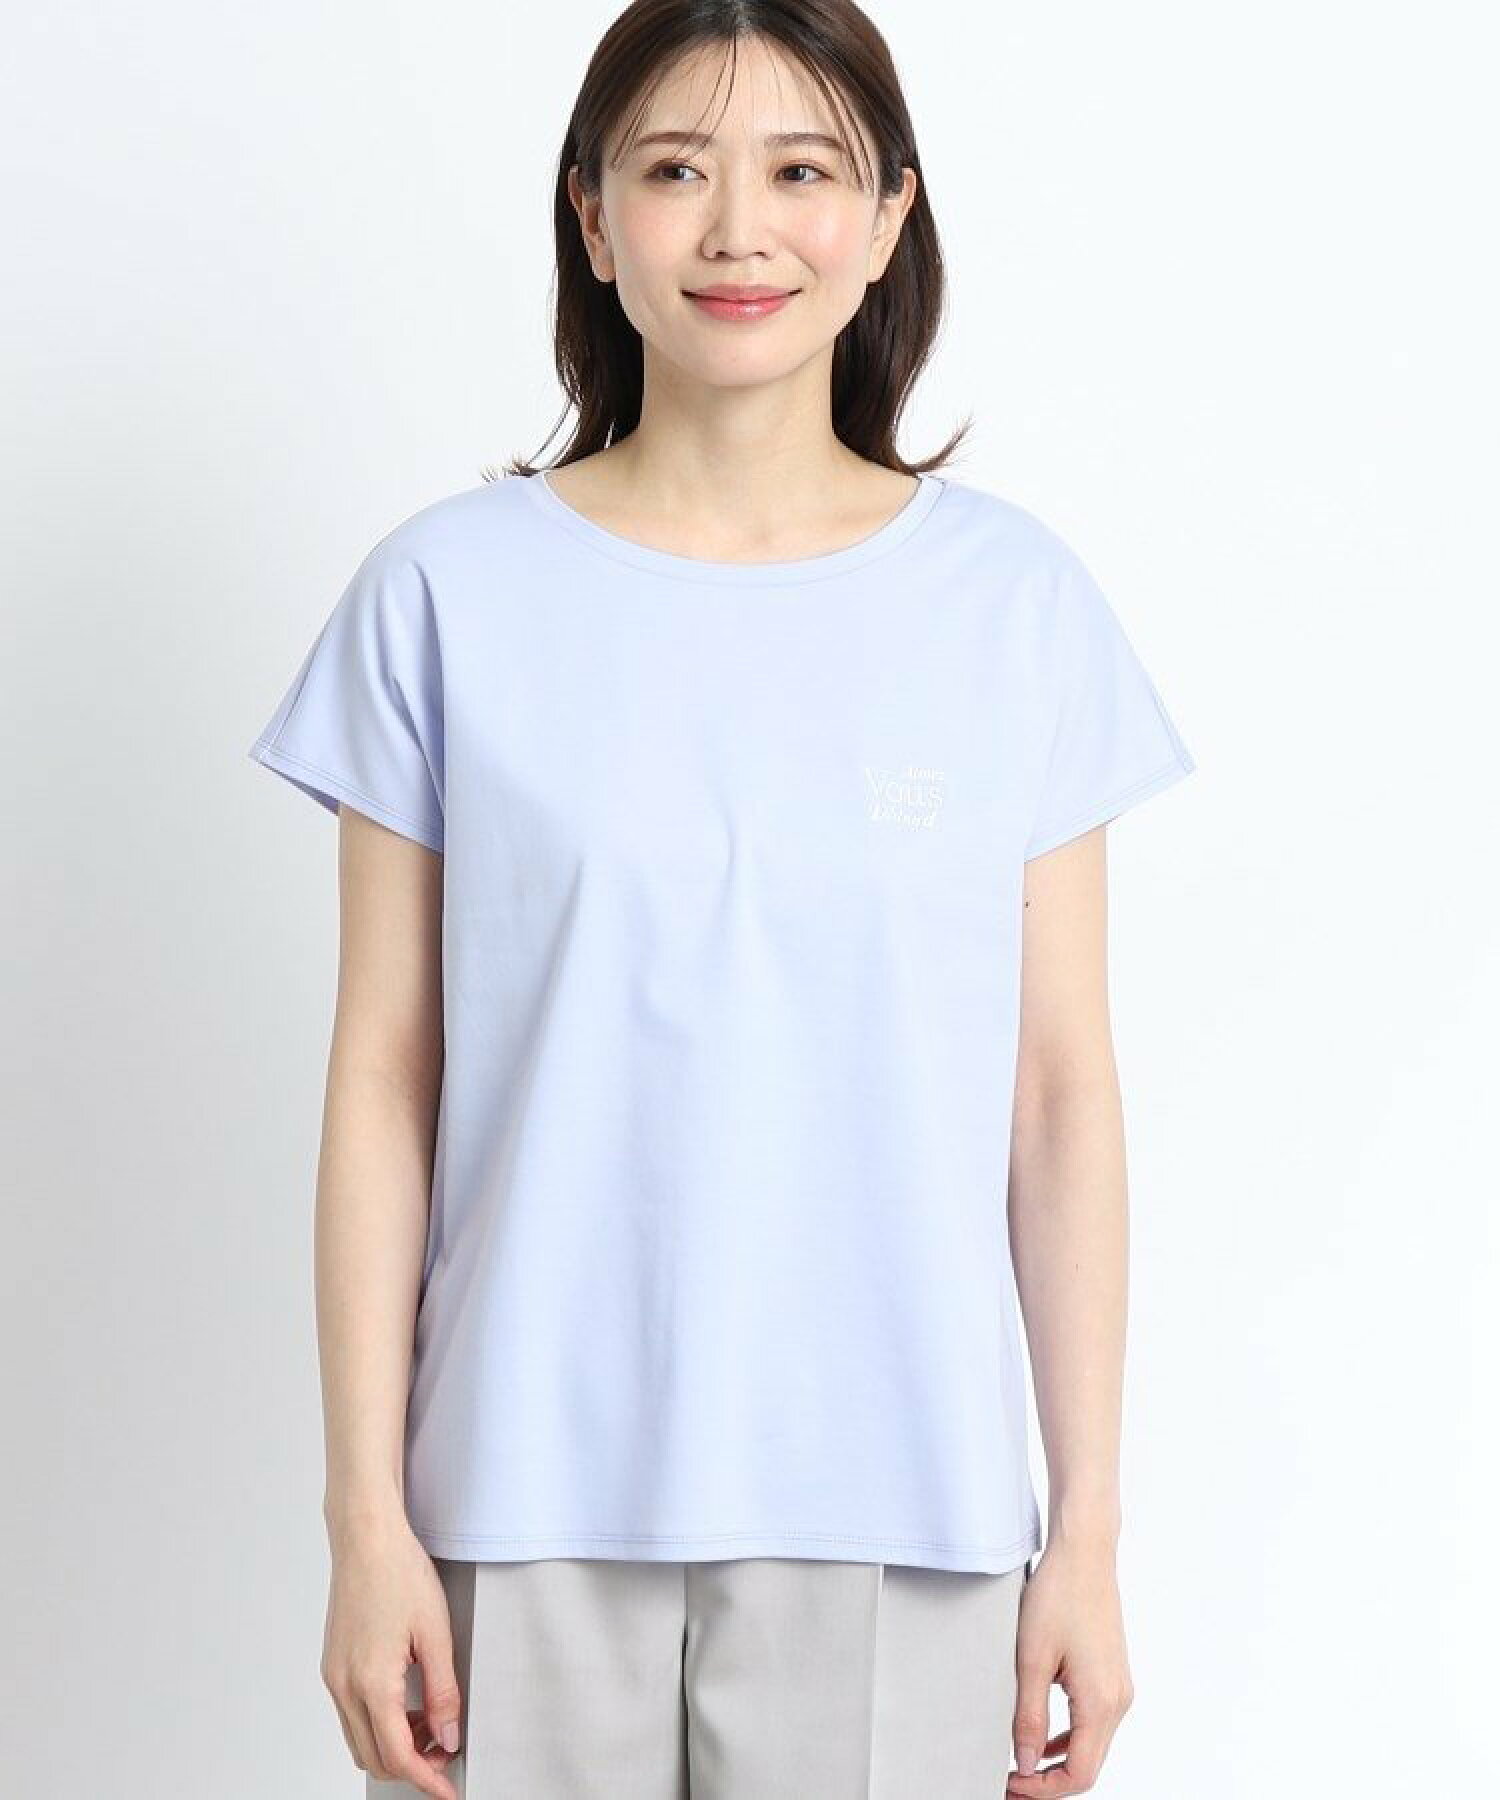 【マシンウォッシュ可能/UVカット/接触冷感】フレンチスリーブロゴTシャツ